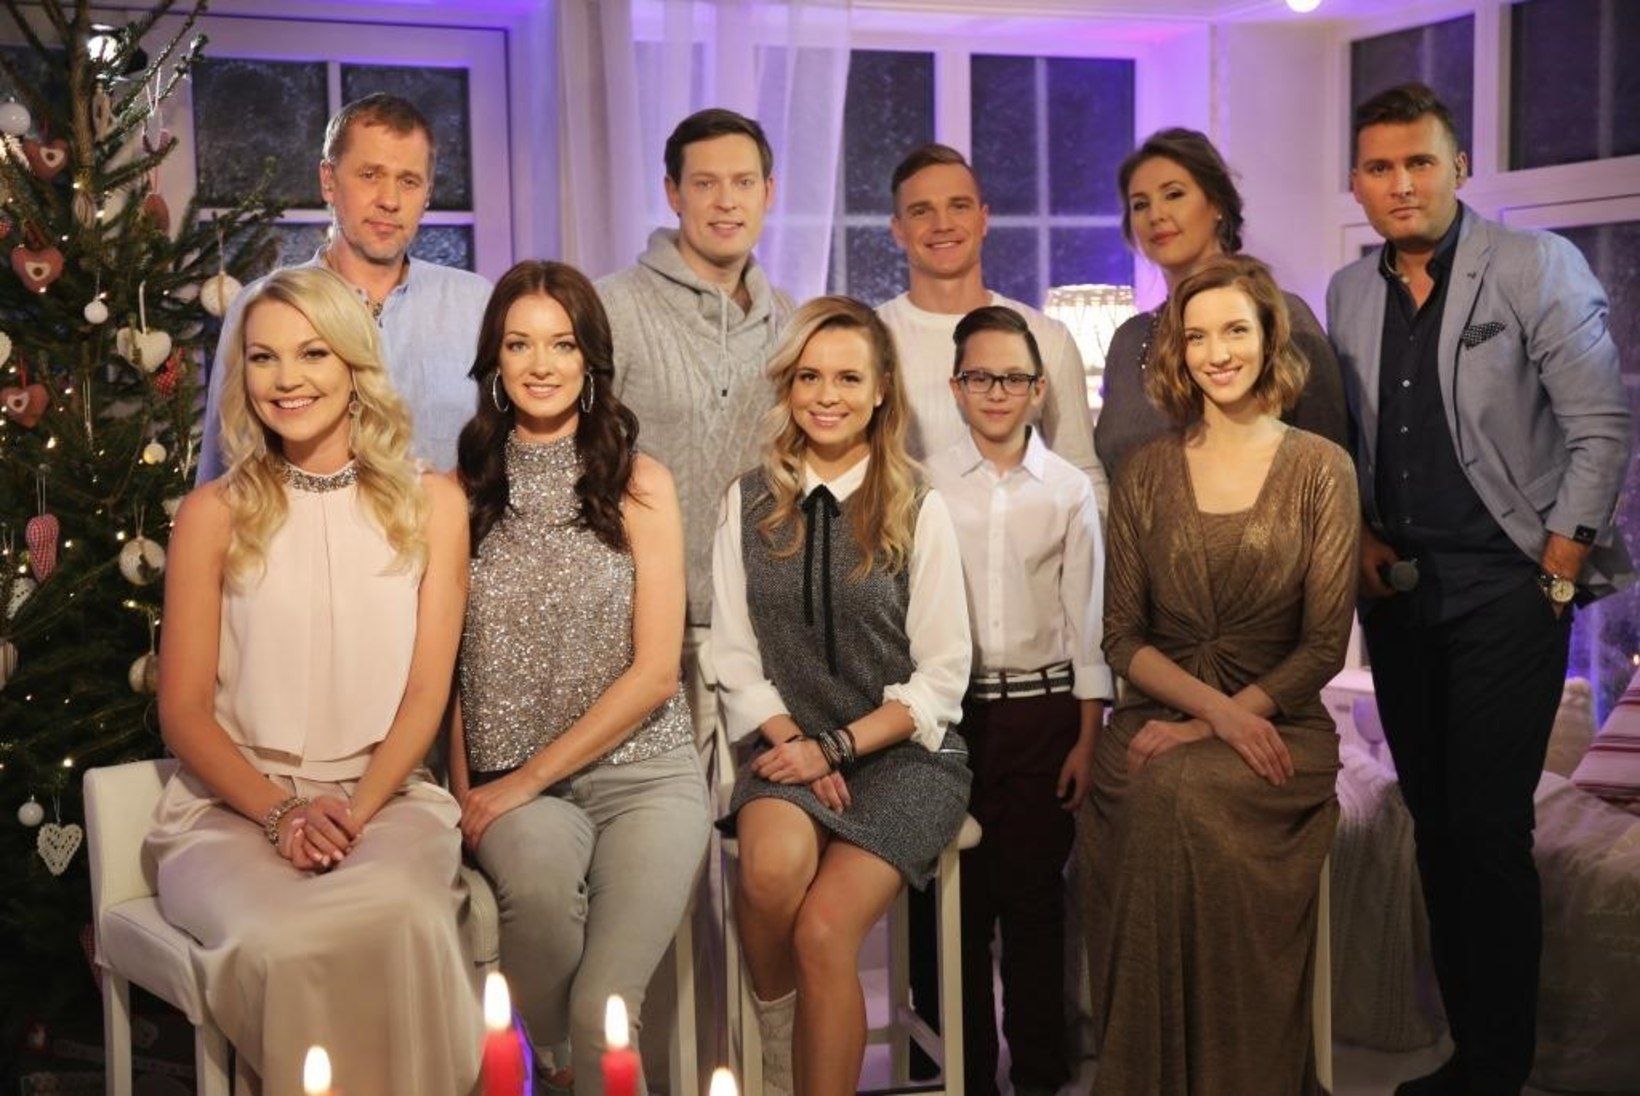 TV3-e "Inglite aeg" osutus sel aastal Eesti telekanalite kõige edukamaks heategevussaateks